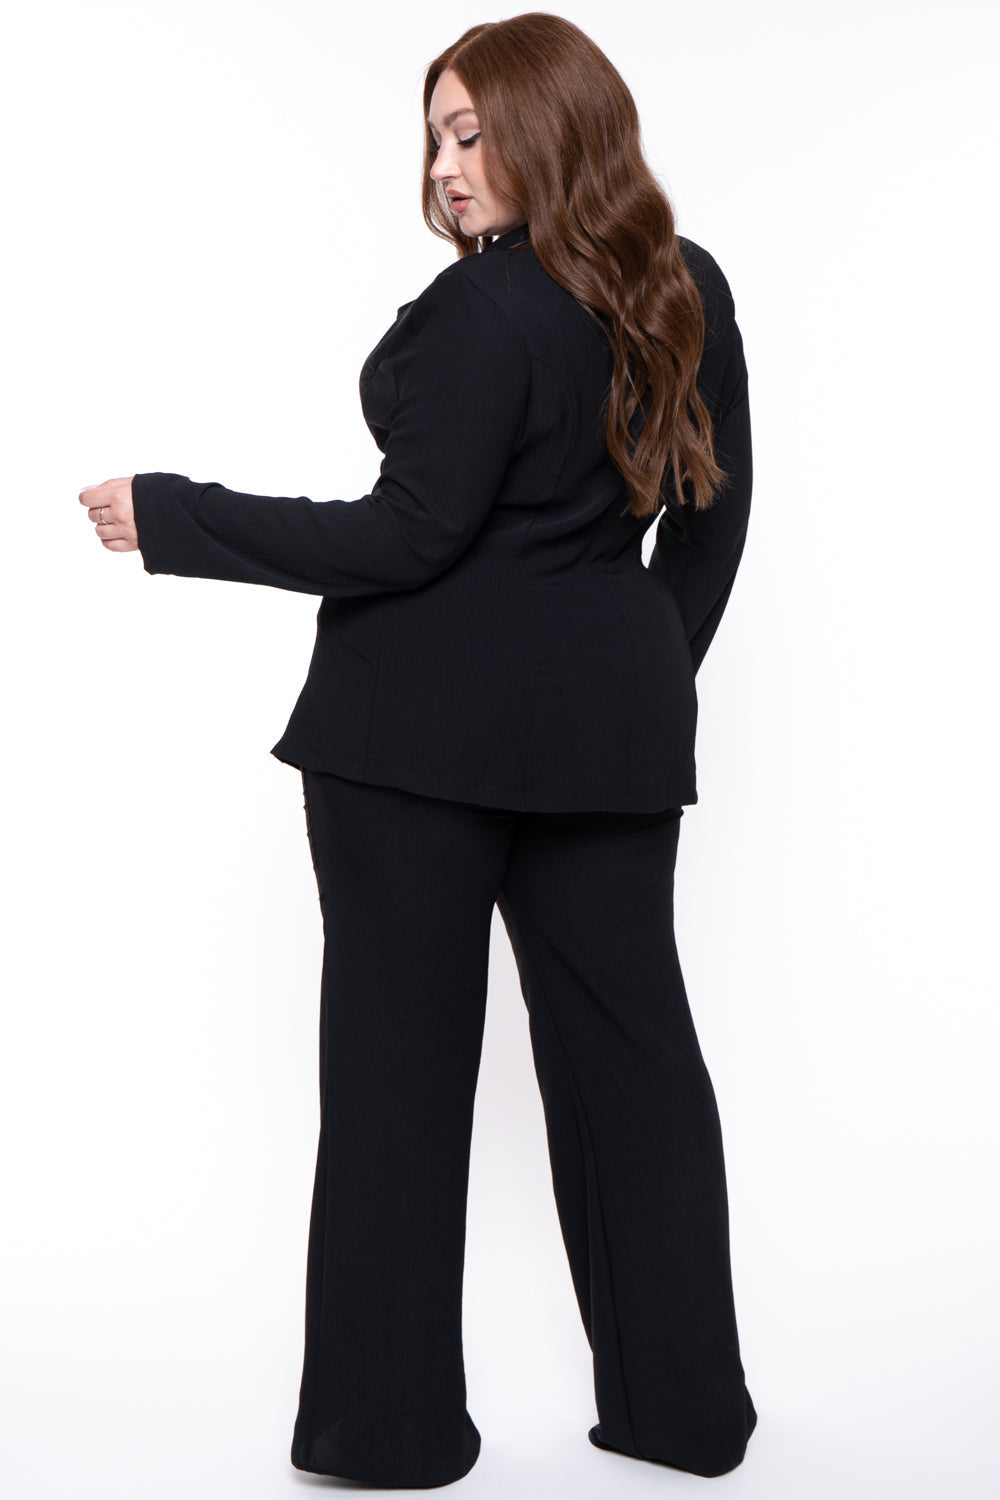 Gibiu Matching Sets Plus Size HBIC Pant Suit - Black